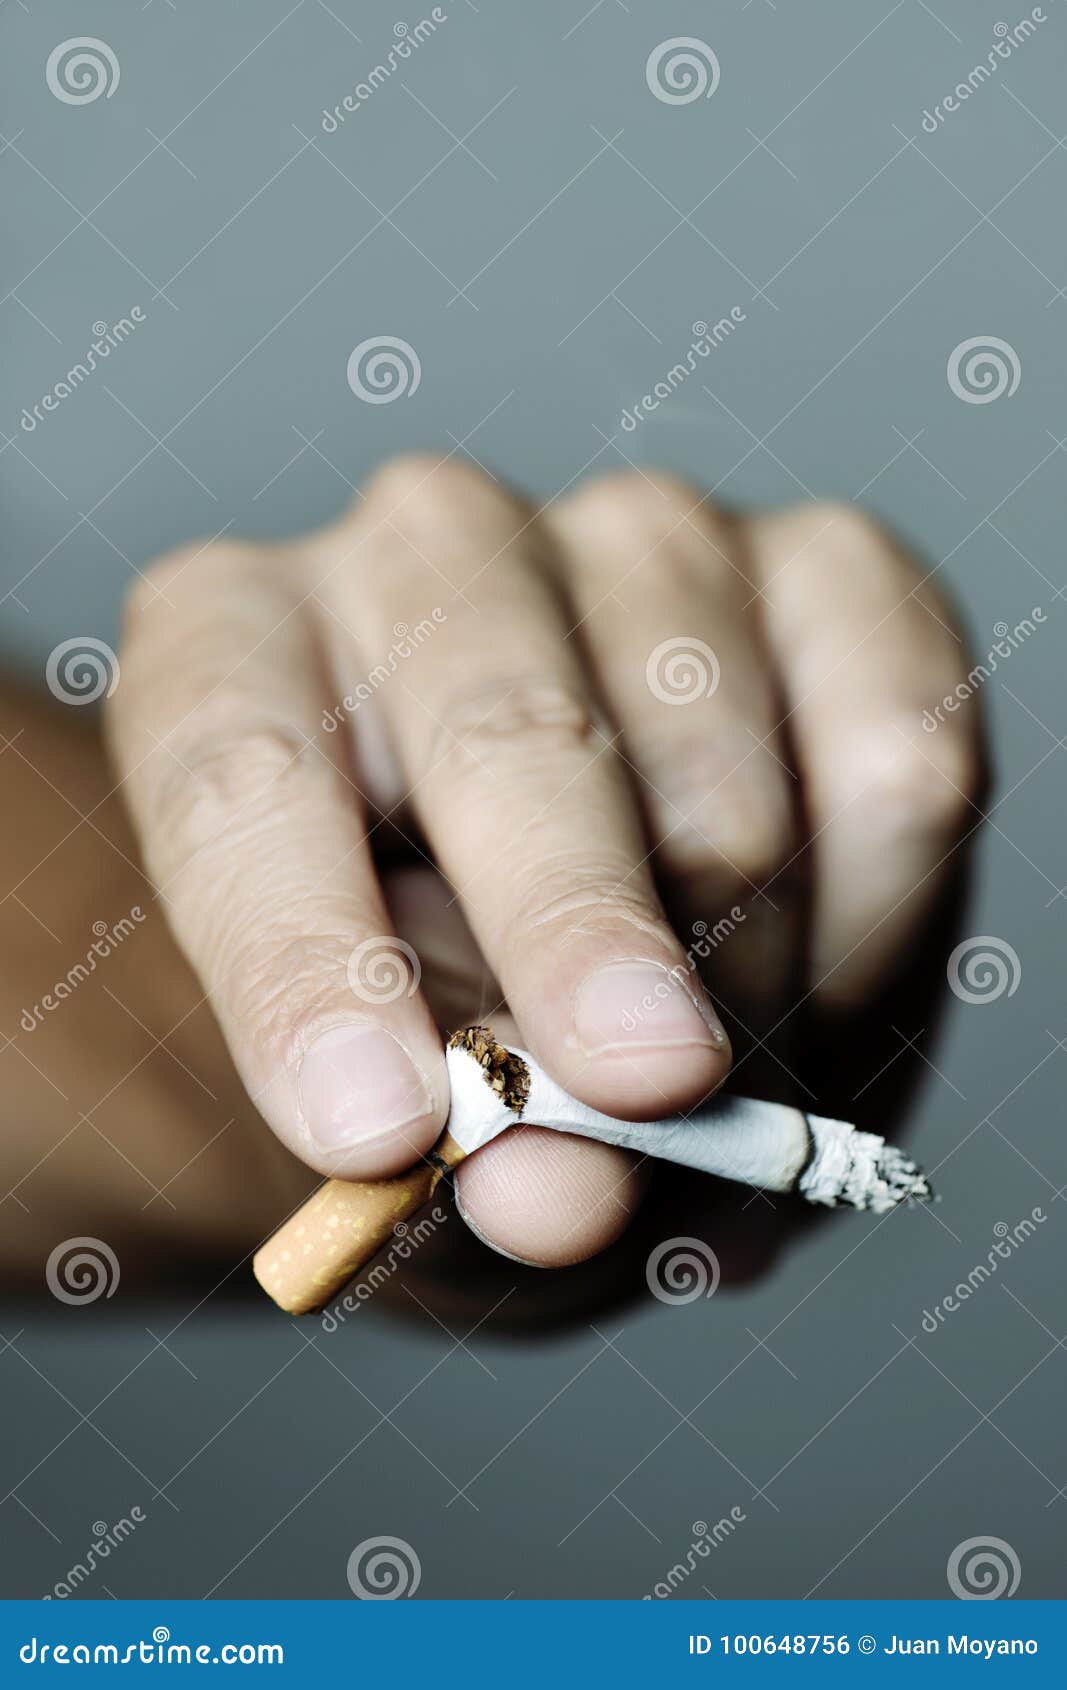 Junger Mann, der das Rauchen beendigt. Nahaufnahme der Hand eines jungen kaukasischen Mannes, der eine beleuchtete Zigarette mit seinen Fingern bricht